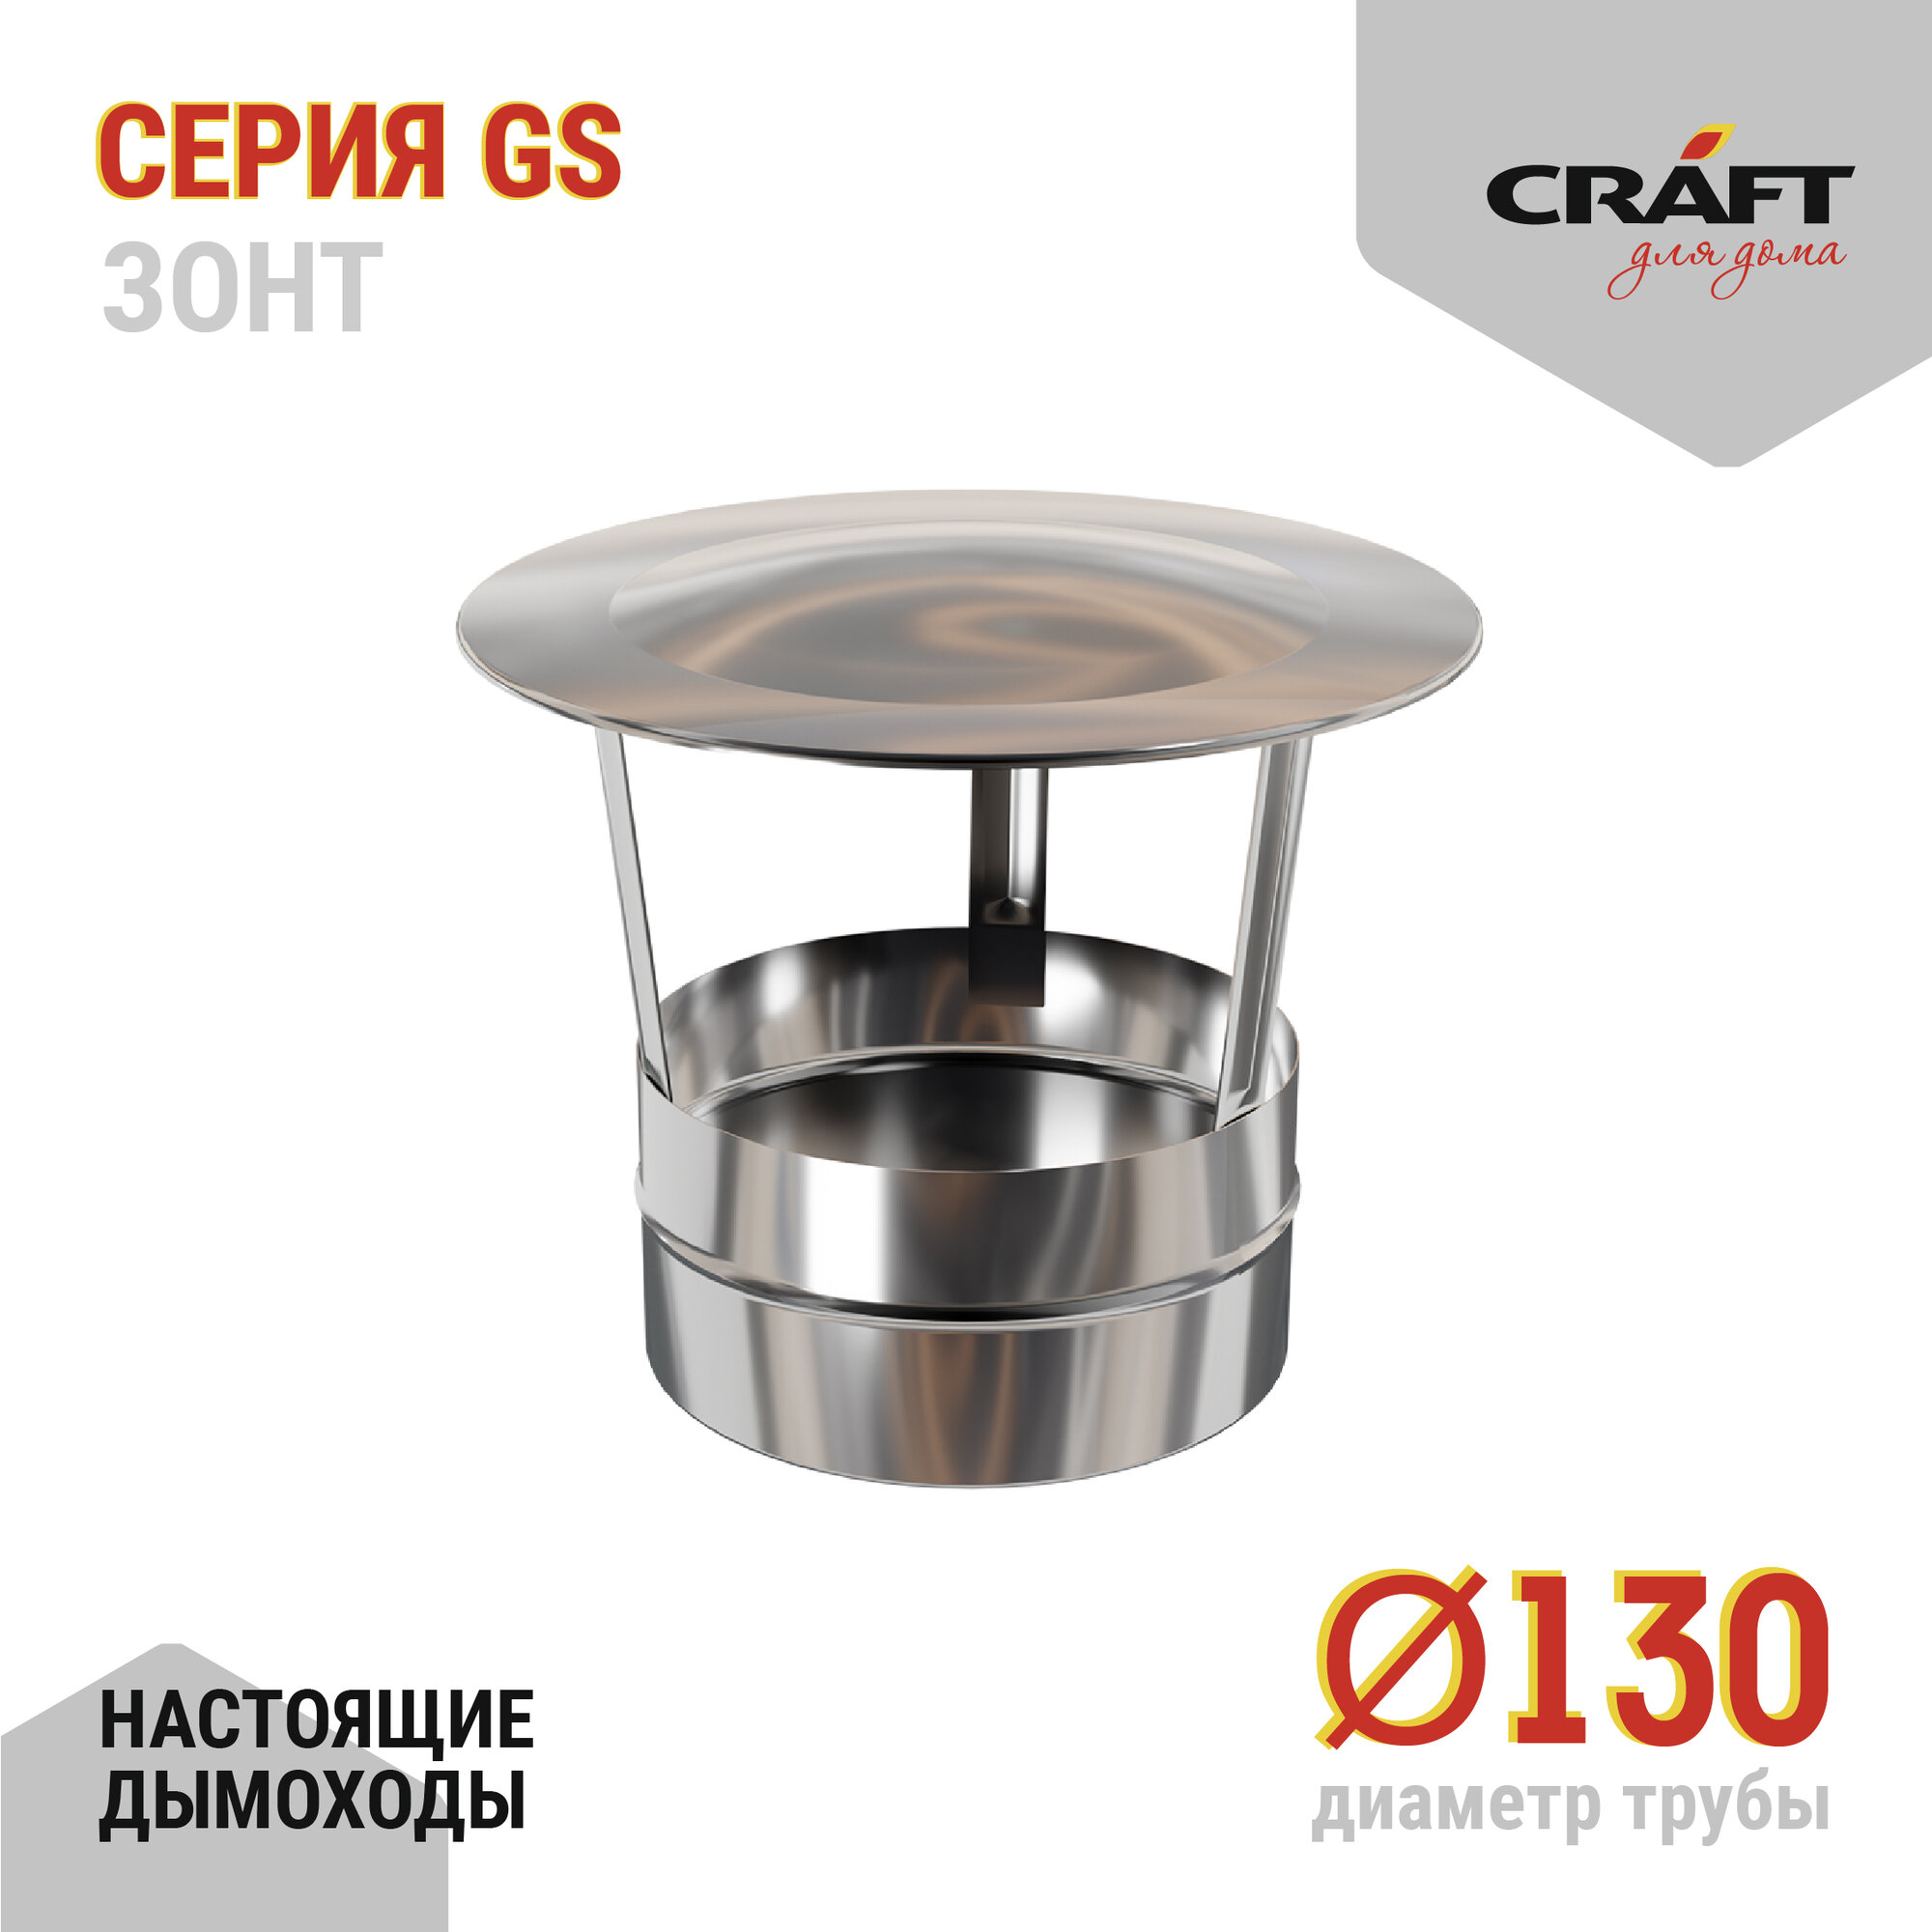 Craft GS зонт (316/0,5) Ф130